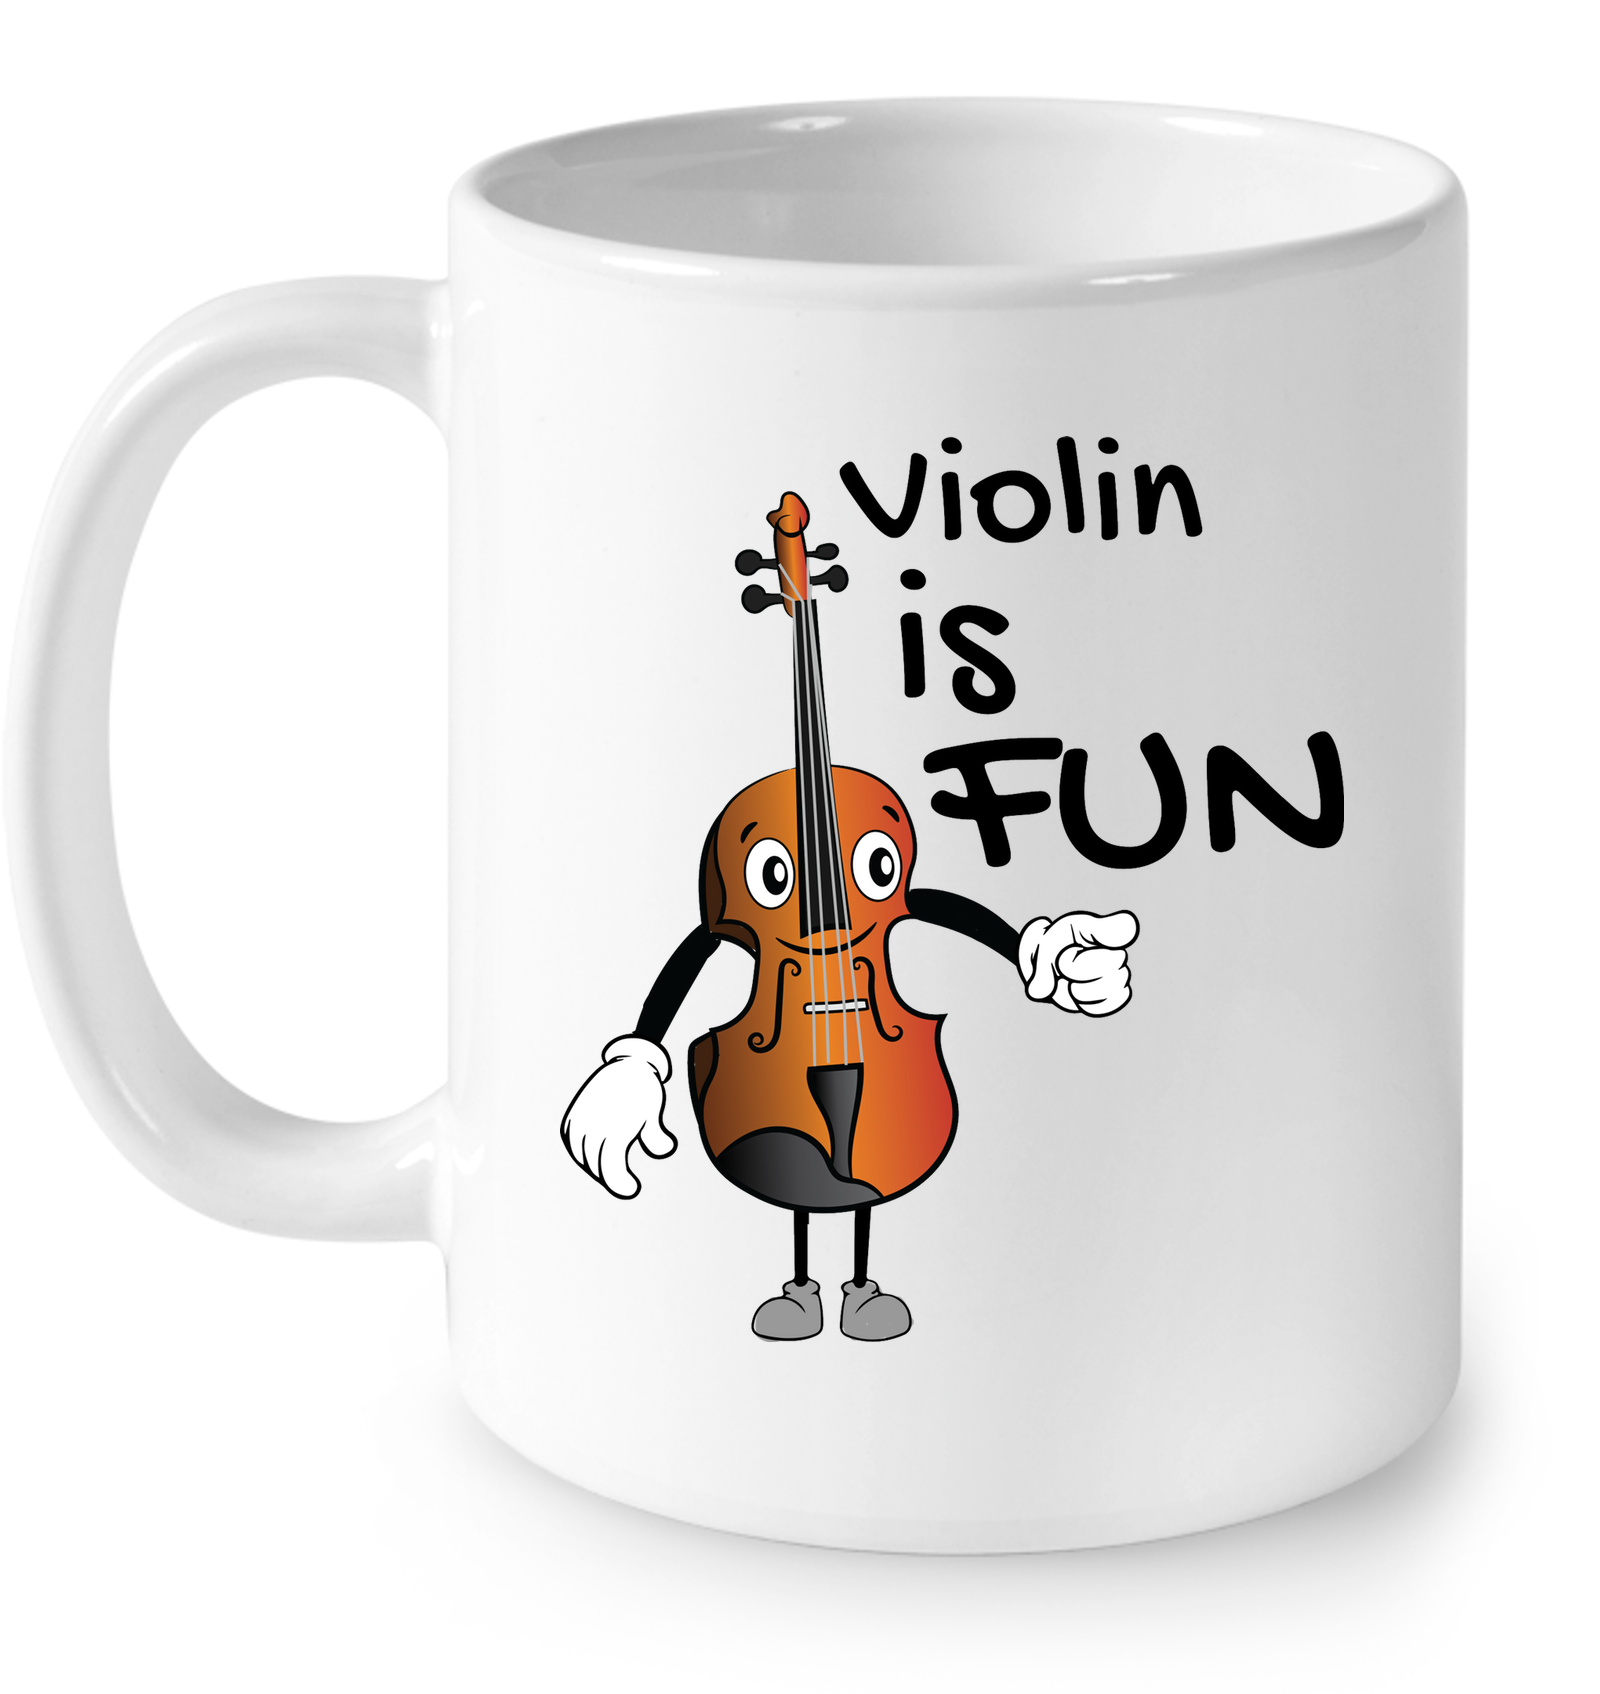 Violin is Fun - Ceramic Mug